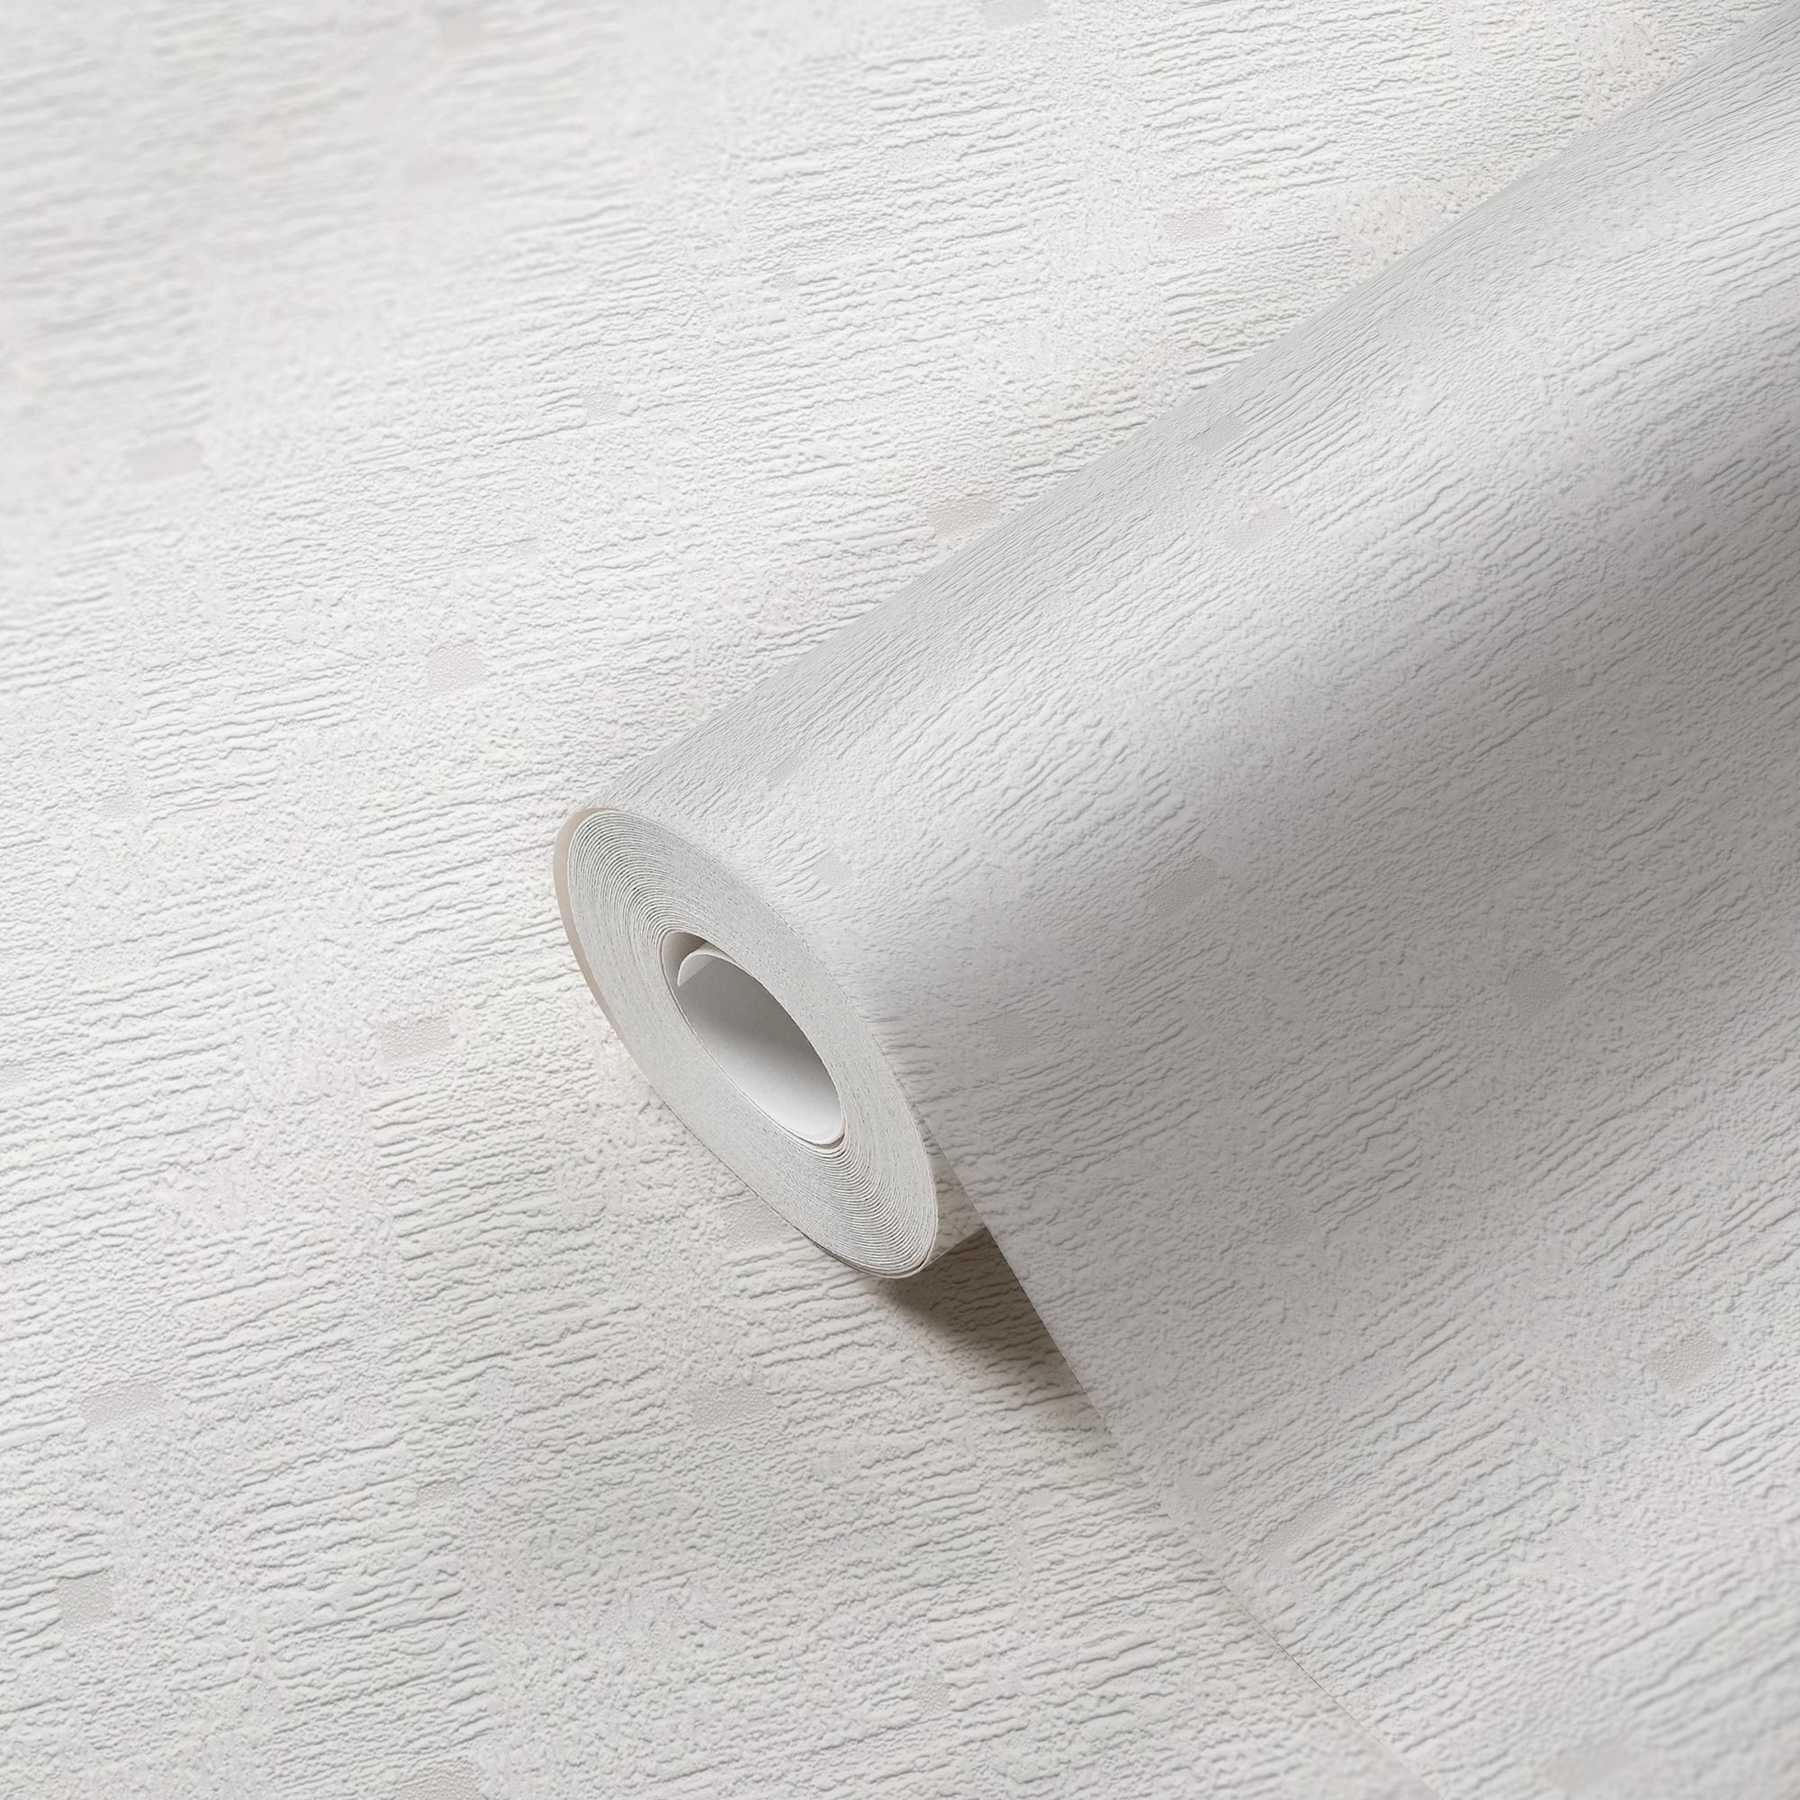             papel pintado óptico de yeso con efecto de estructura de espuma - blanco
        